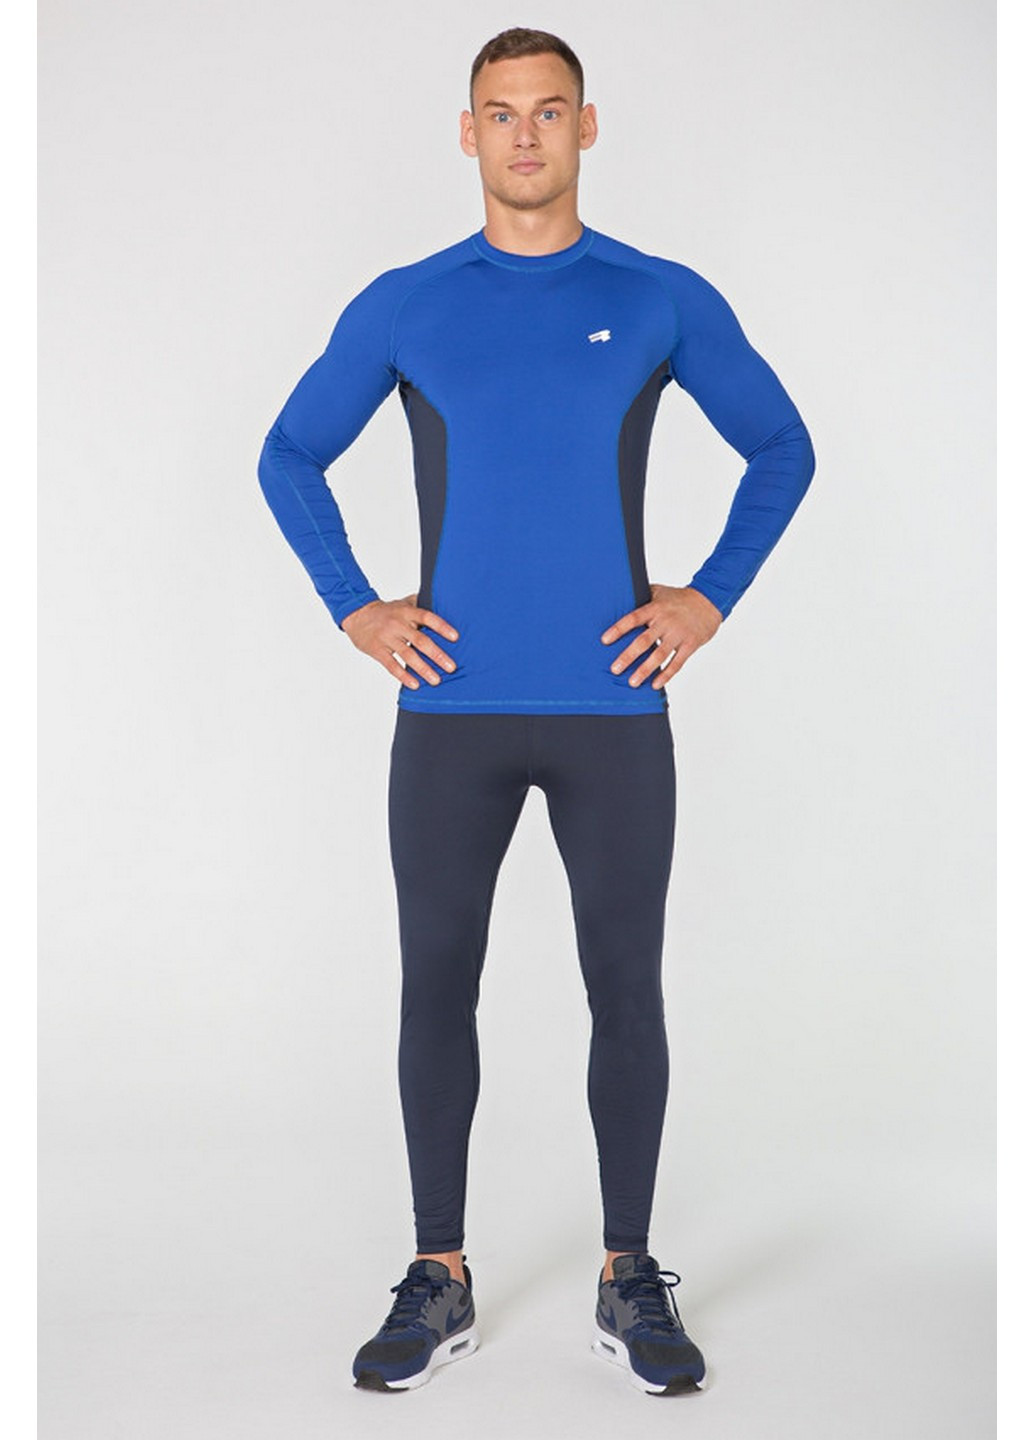 Сіро-синій демісезонний спортивний костюм для бігу Radical